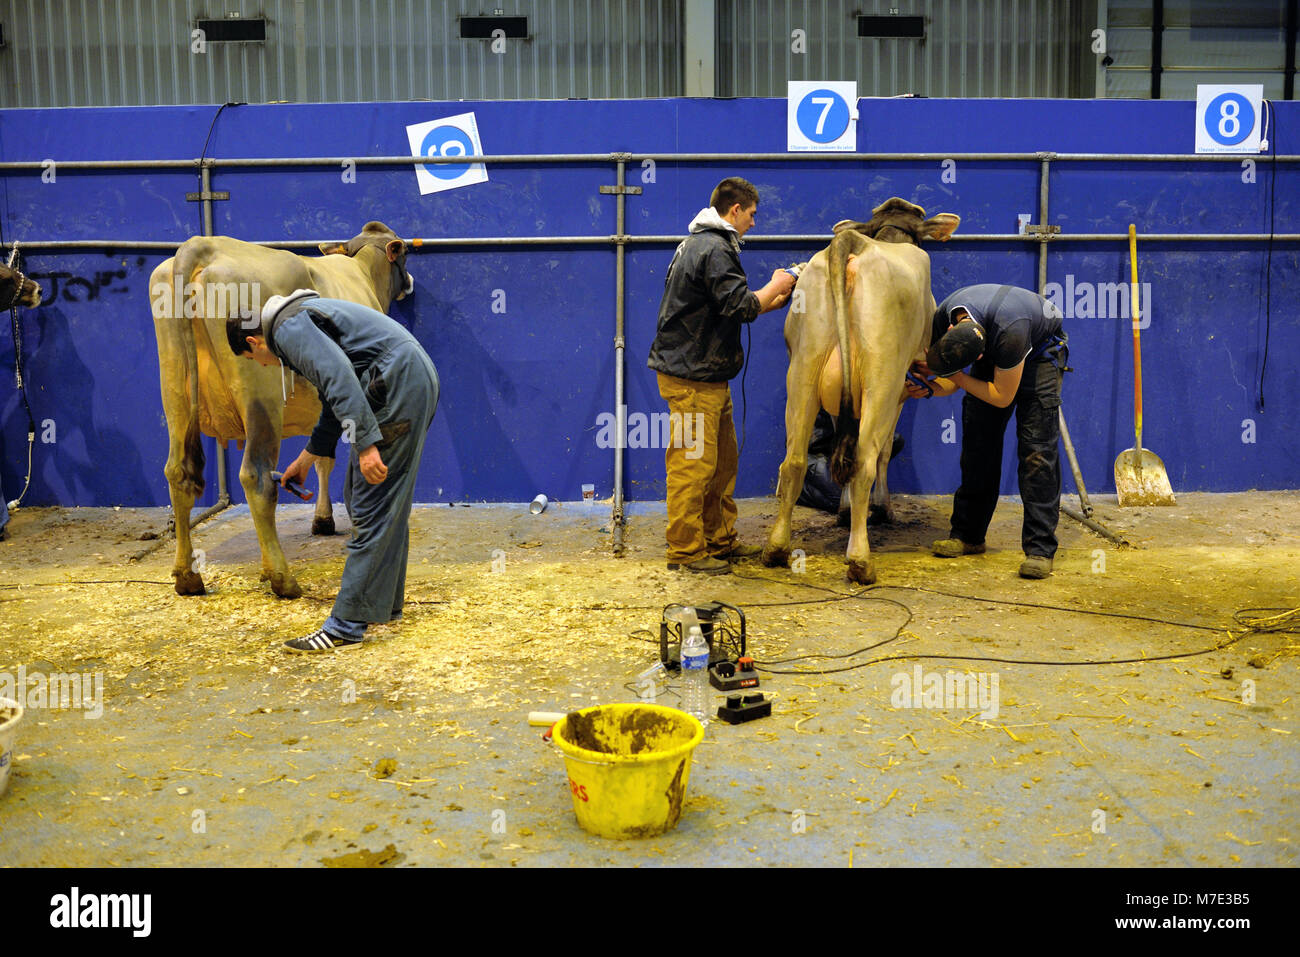 Les éleveurs de bovins et de préparer leur prix Clip vaches au Salon International de l'agriculture, ou Salon International de l'Agriculture (SIA) Paris France Banque D'Images